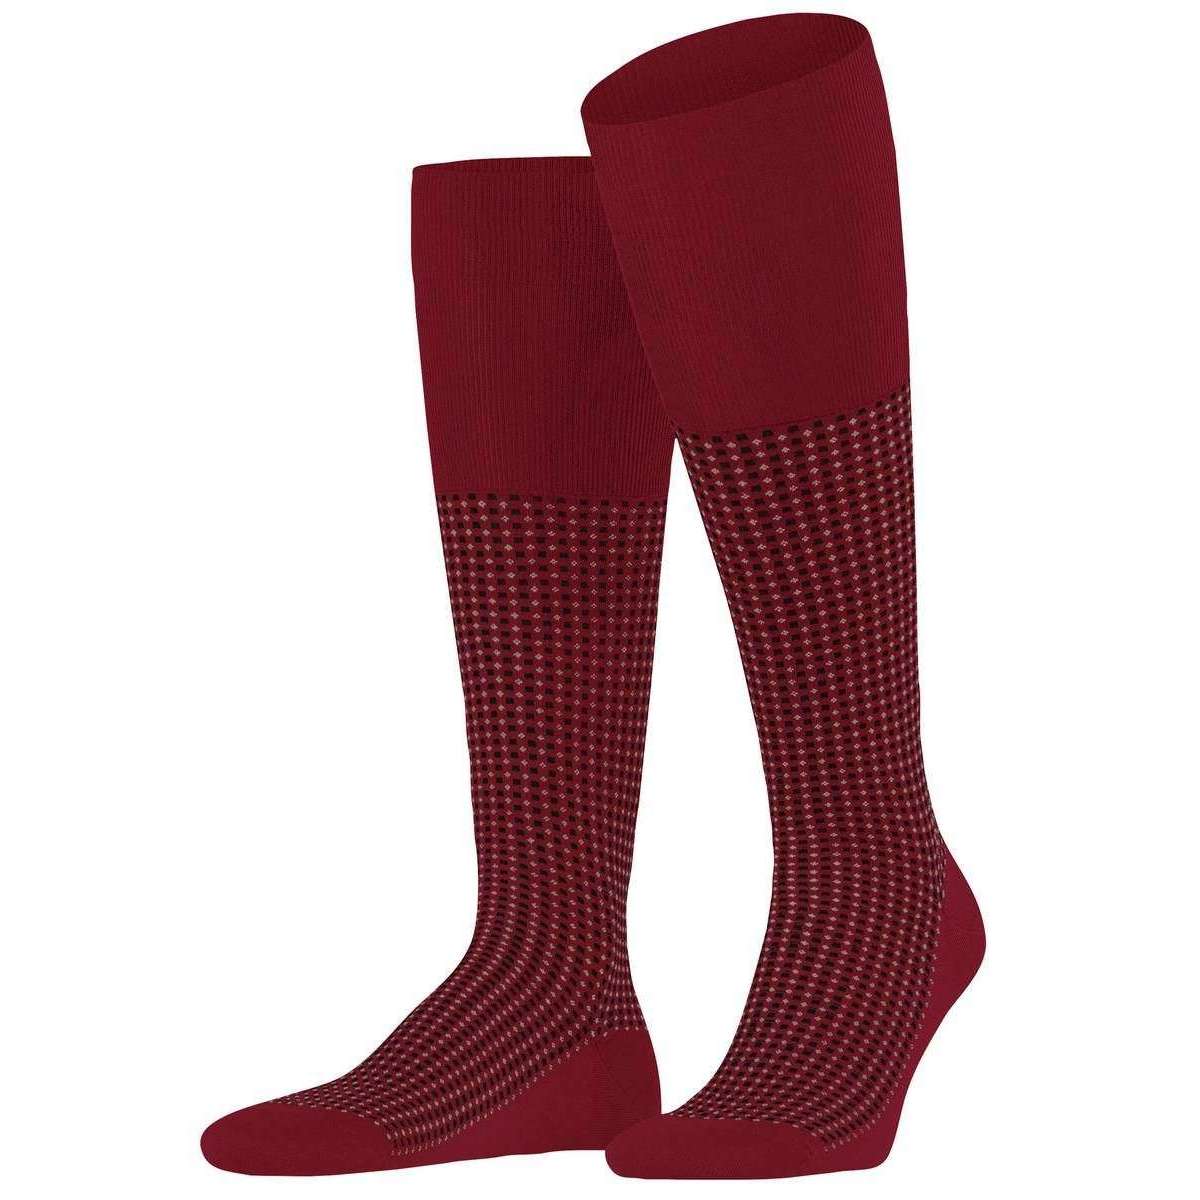 Falke Uptown Tie Knee High Socks - Scarlet Red